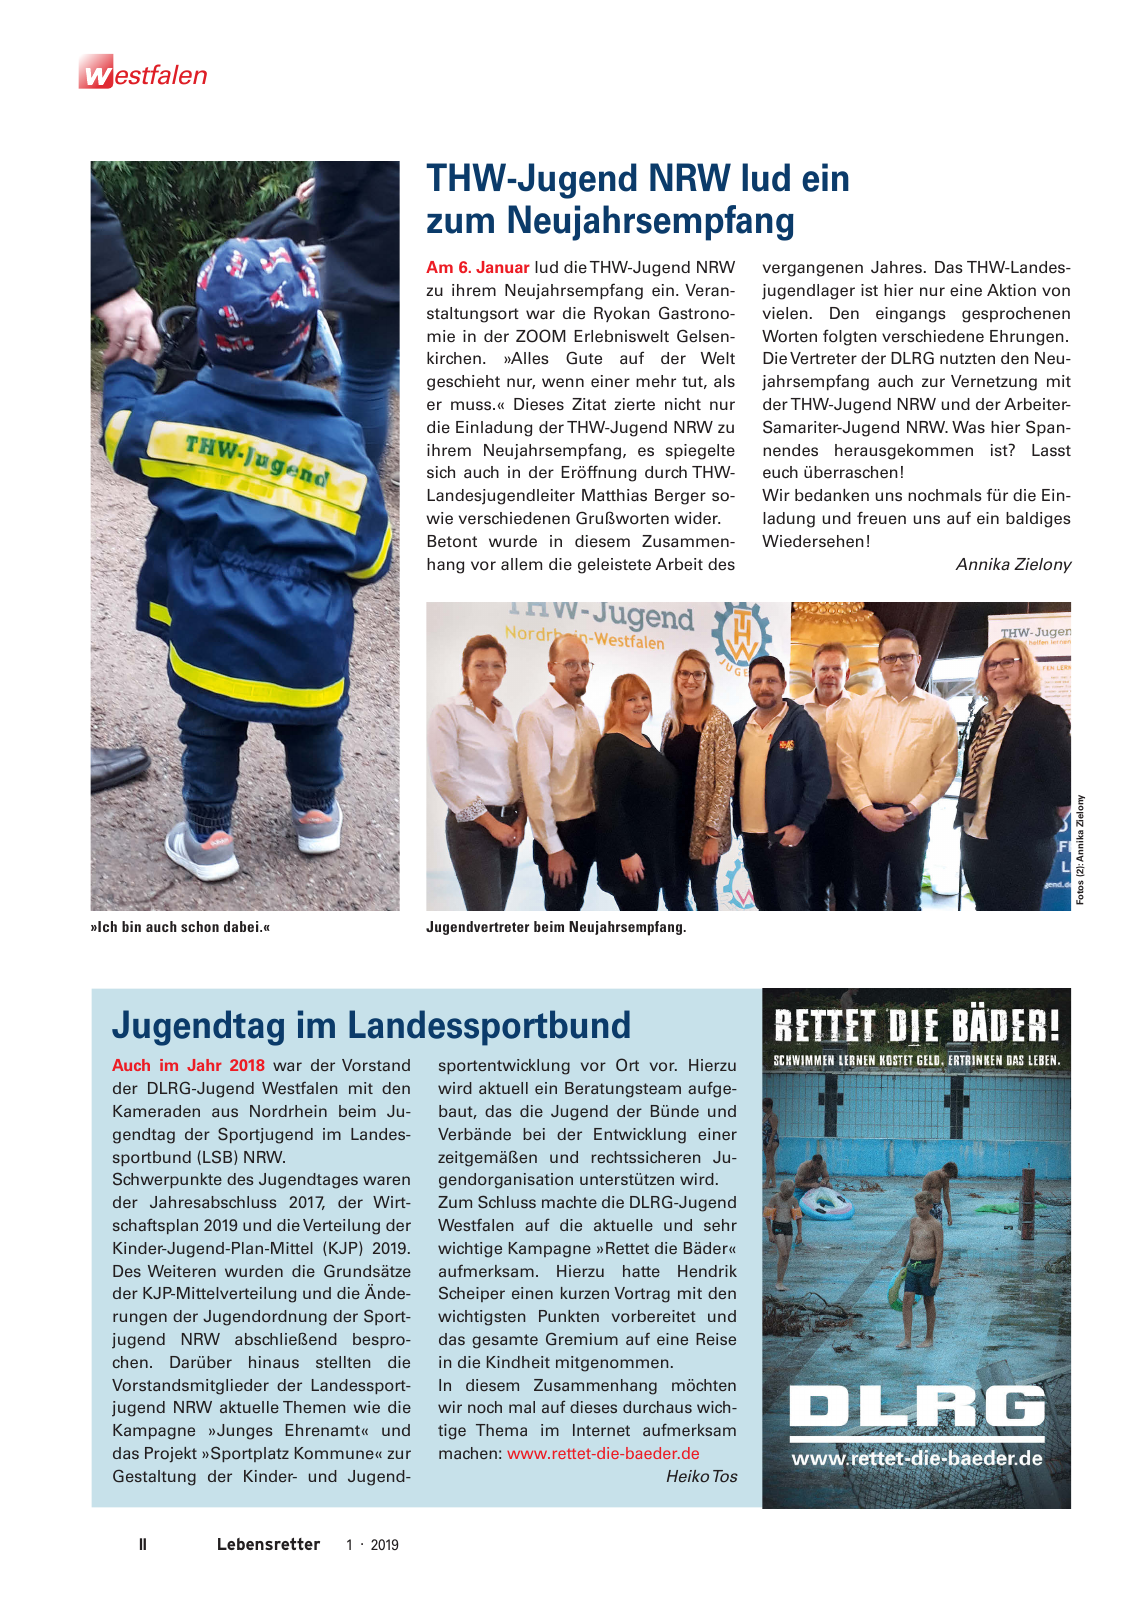 Vorschau Lebensretter 1/2019 –  Regionalausgabe Westfalen Seite 4